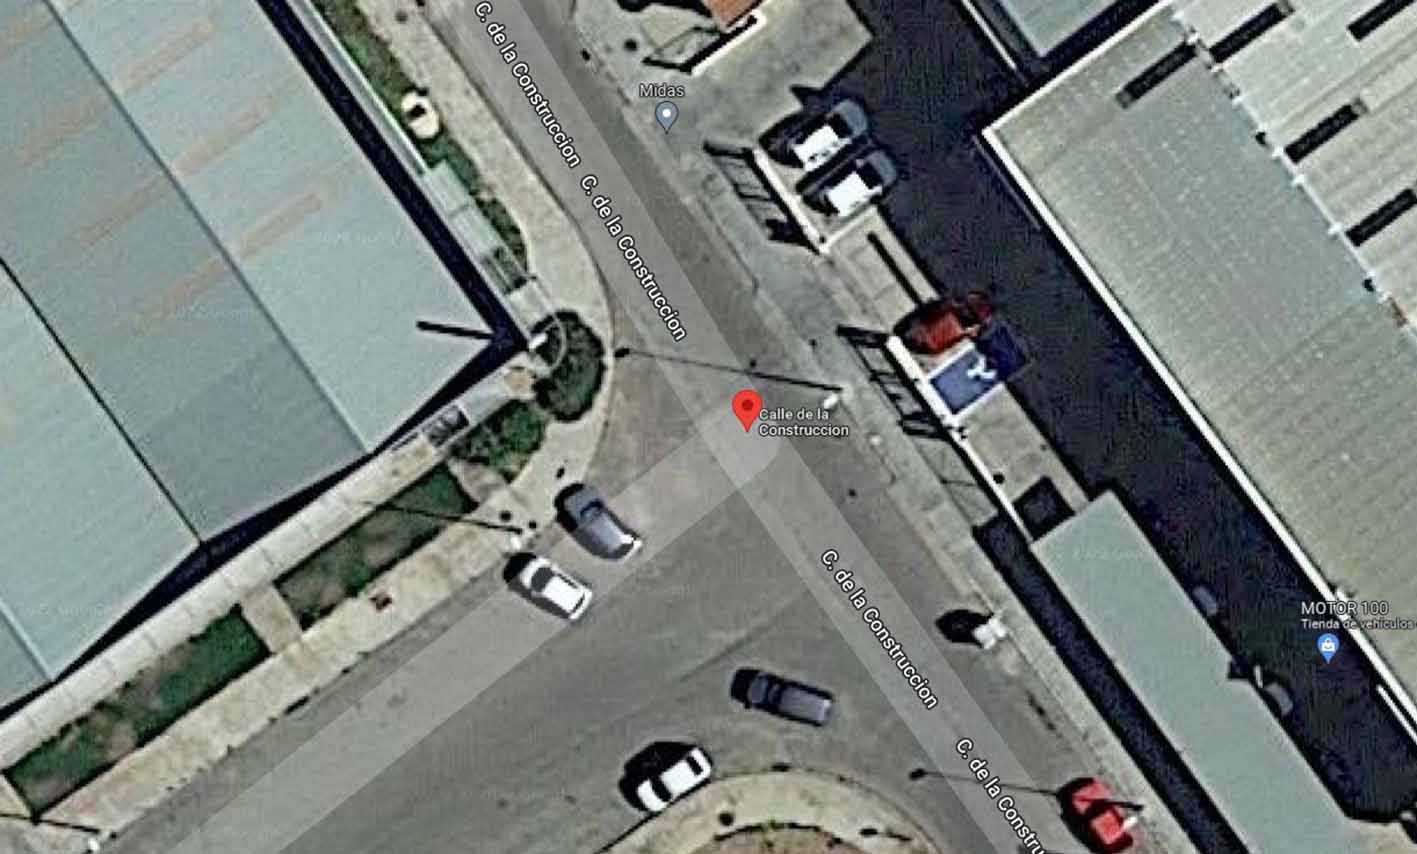 Calle Construcción, donde hubo un accidente laboral en Alcázar de San Juan. Imagen: Google Maps.